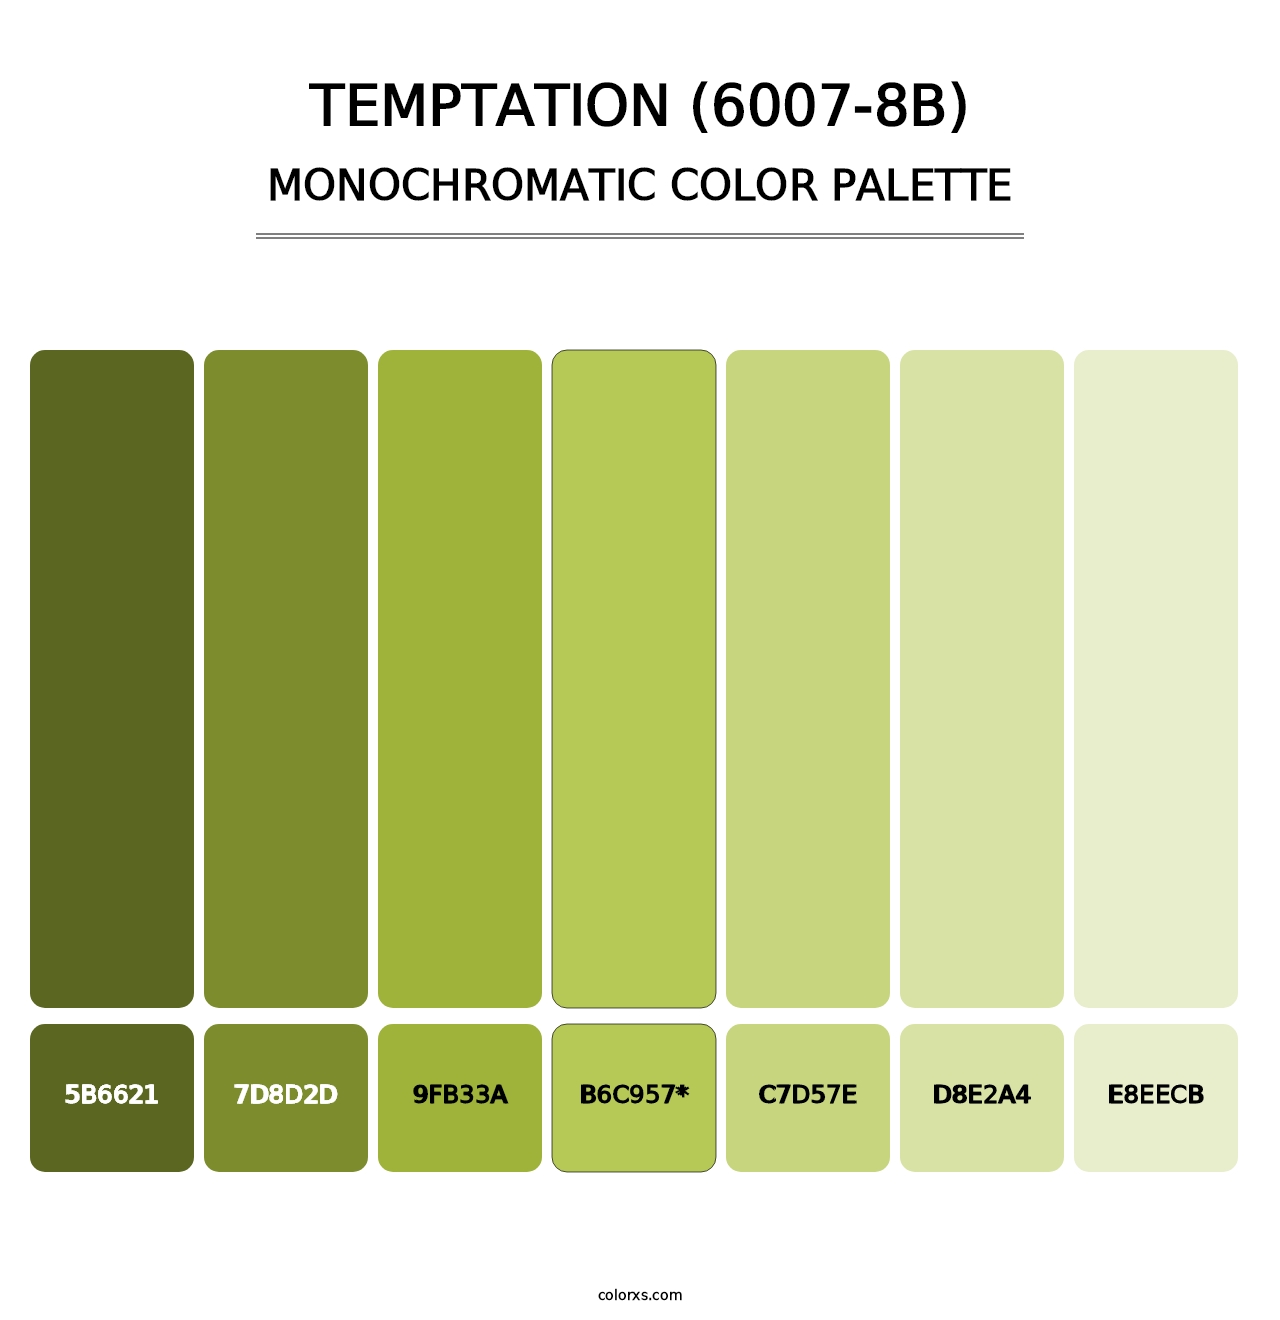 Temptation (6007-8B) - Monochromatic Color Palette